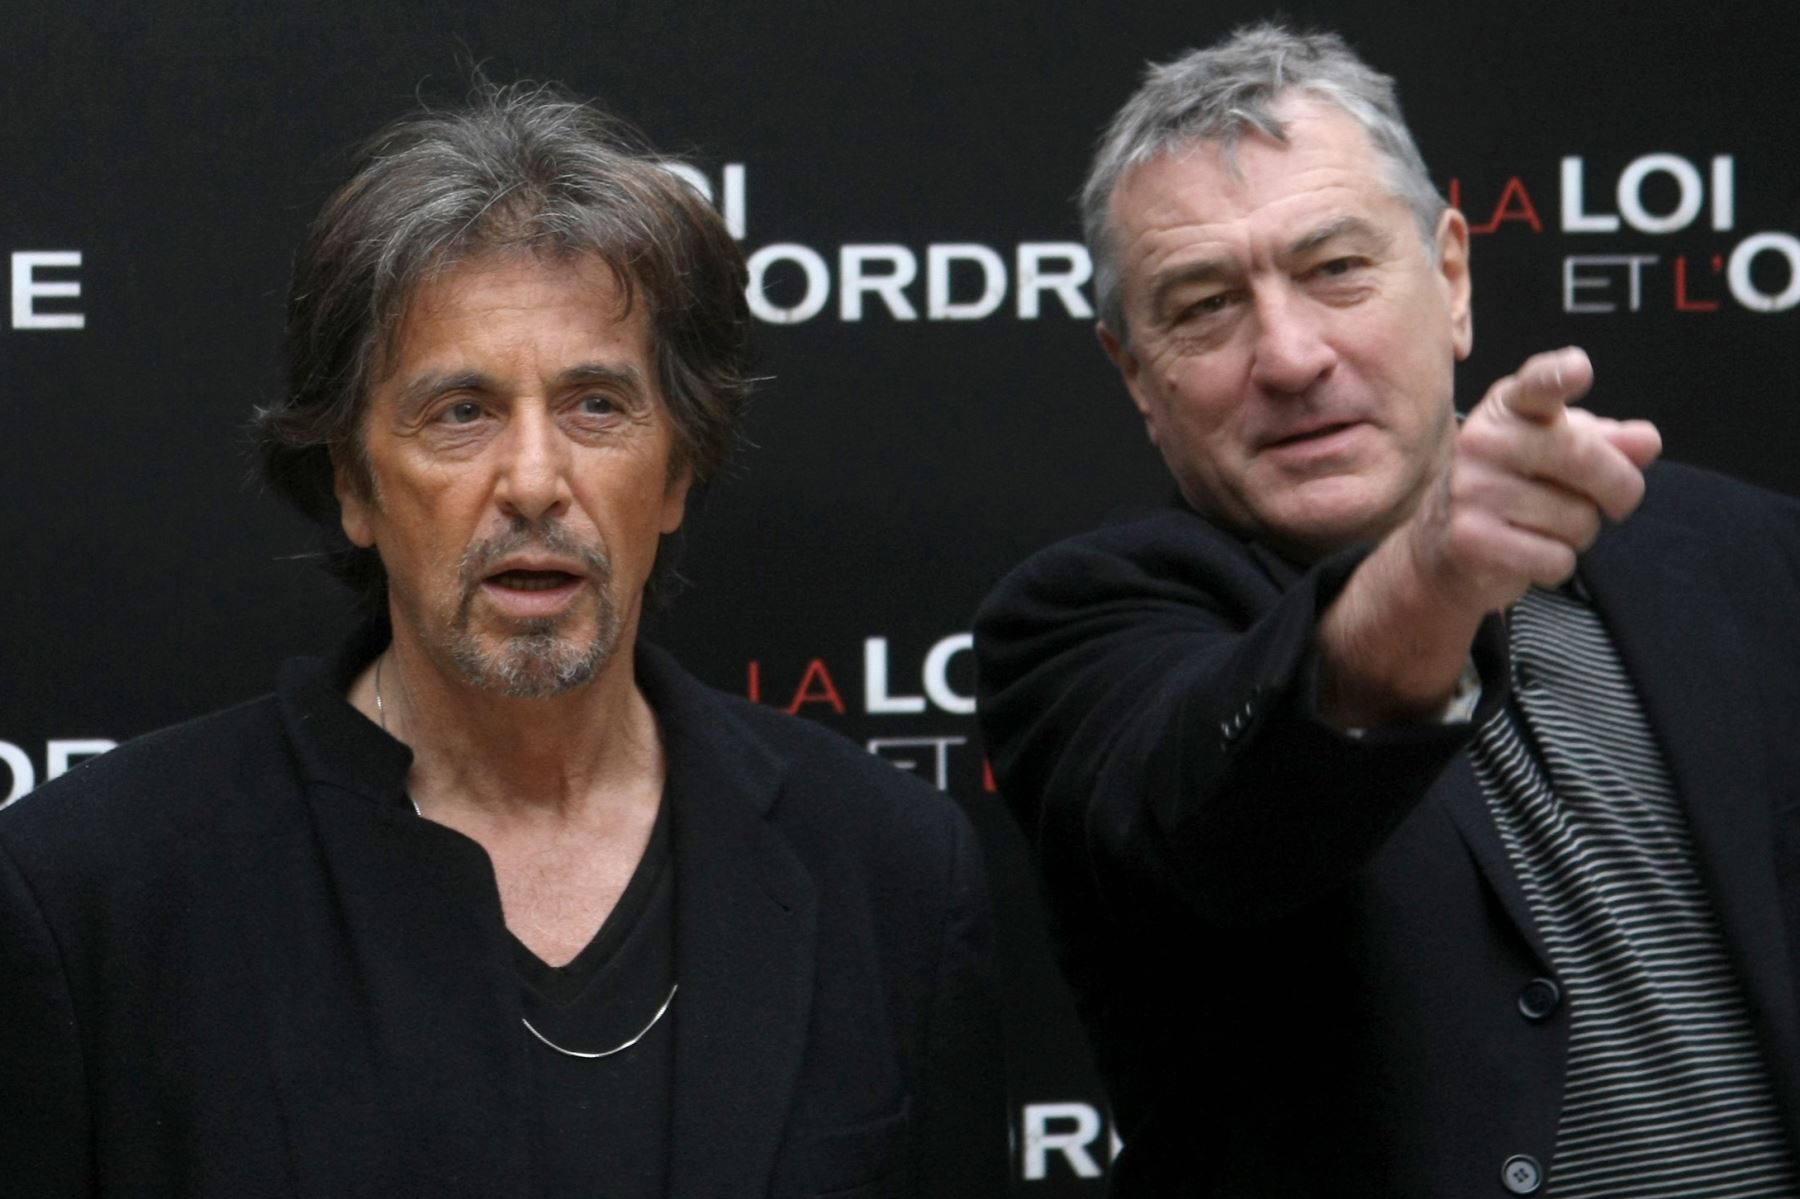 Las leyendas estadounidenses Robert De Niro (R) y Al Pacino (C) posan junto al director Jon Avnet el 15 de septiembre de 2008 en París durante un photocall de su película "Righteous Kill" (título francés "La loi et l